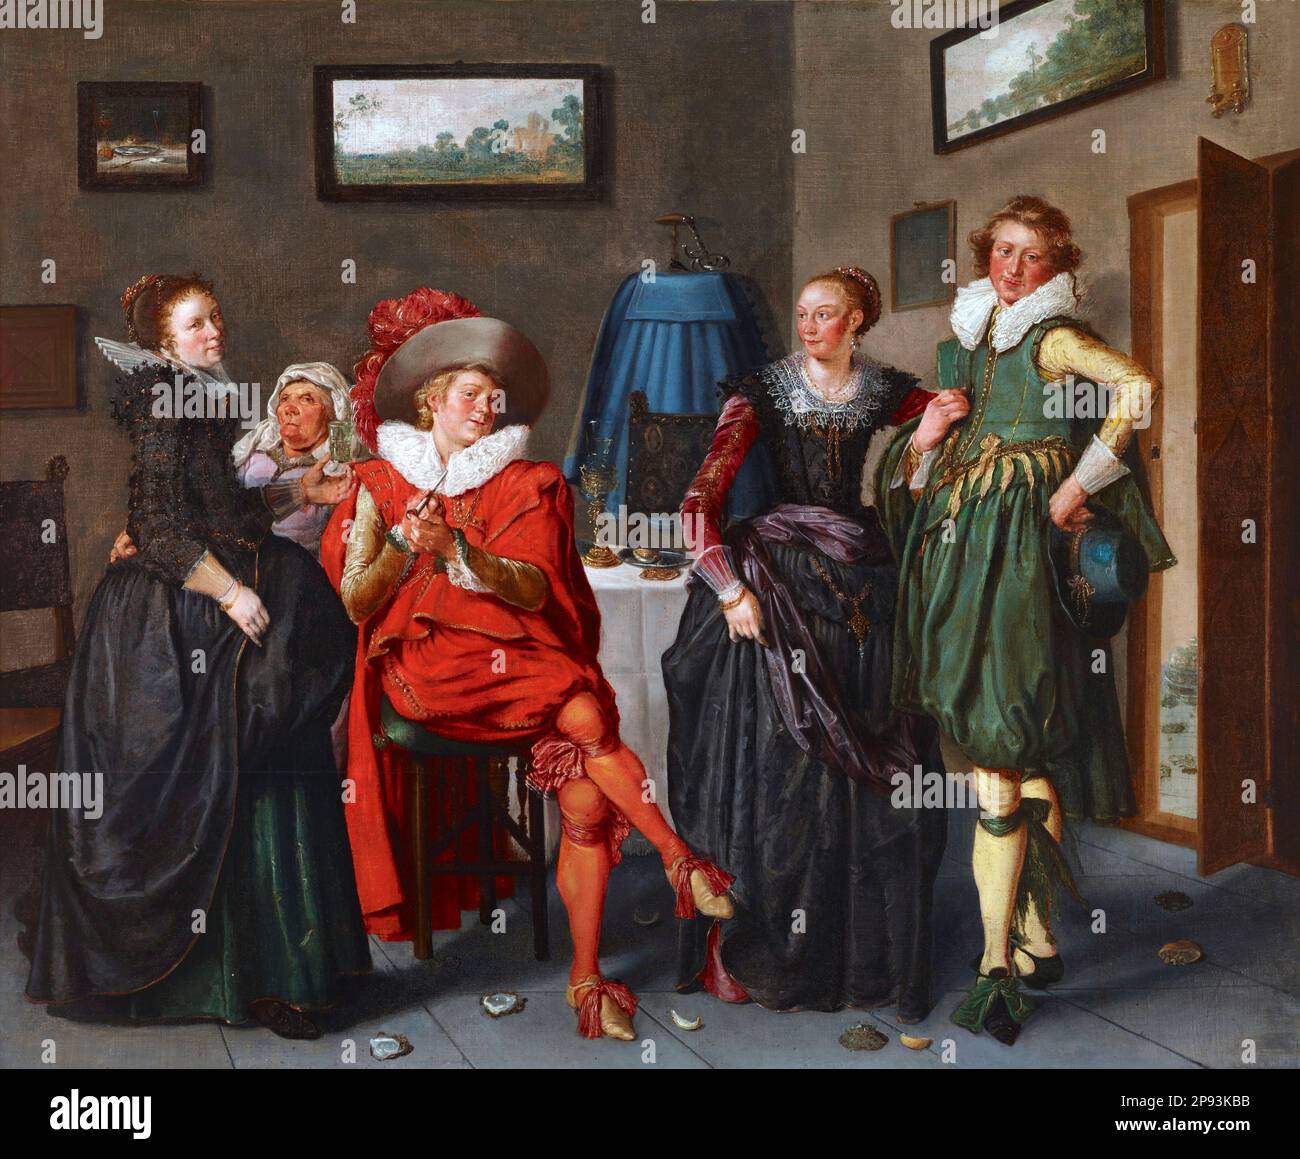 Société jovial par le peintre néerlandais de l'âge d'or, Willem Pieterszoon Buytewech (1591/92-1624), huile sur toile, c. 1622-24 Banque D'Images